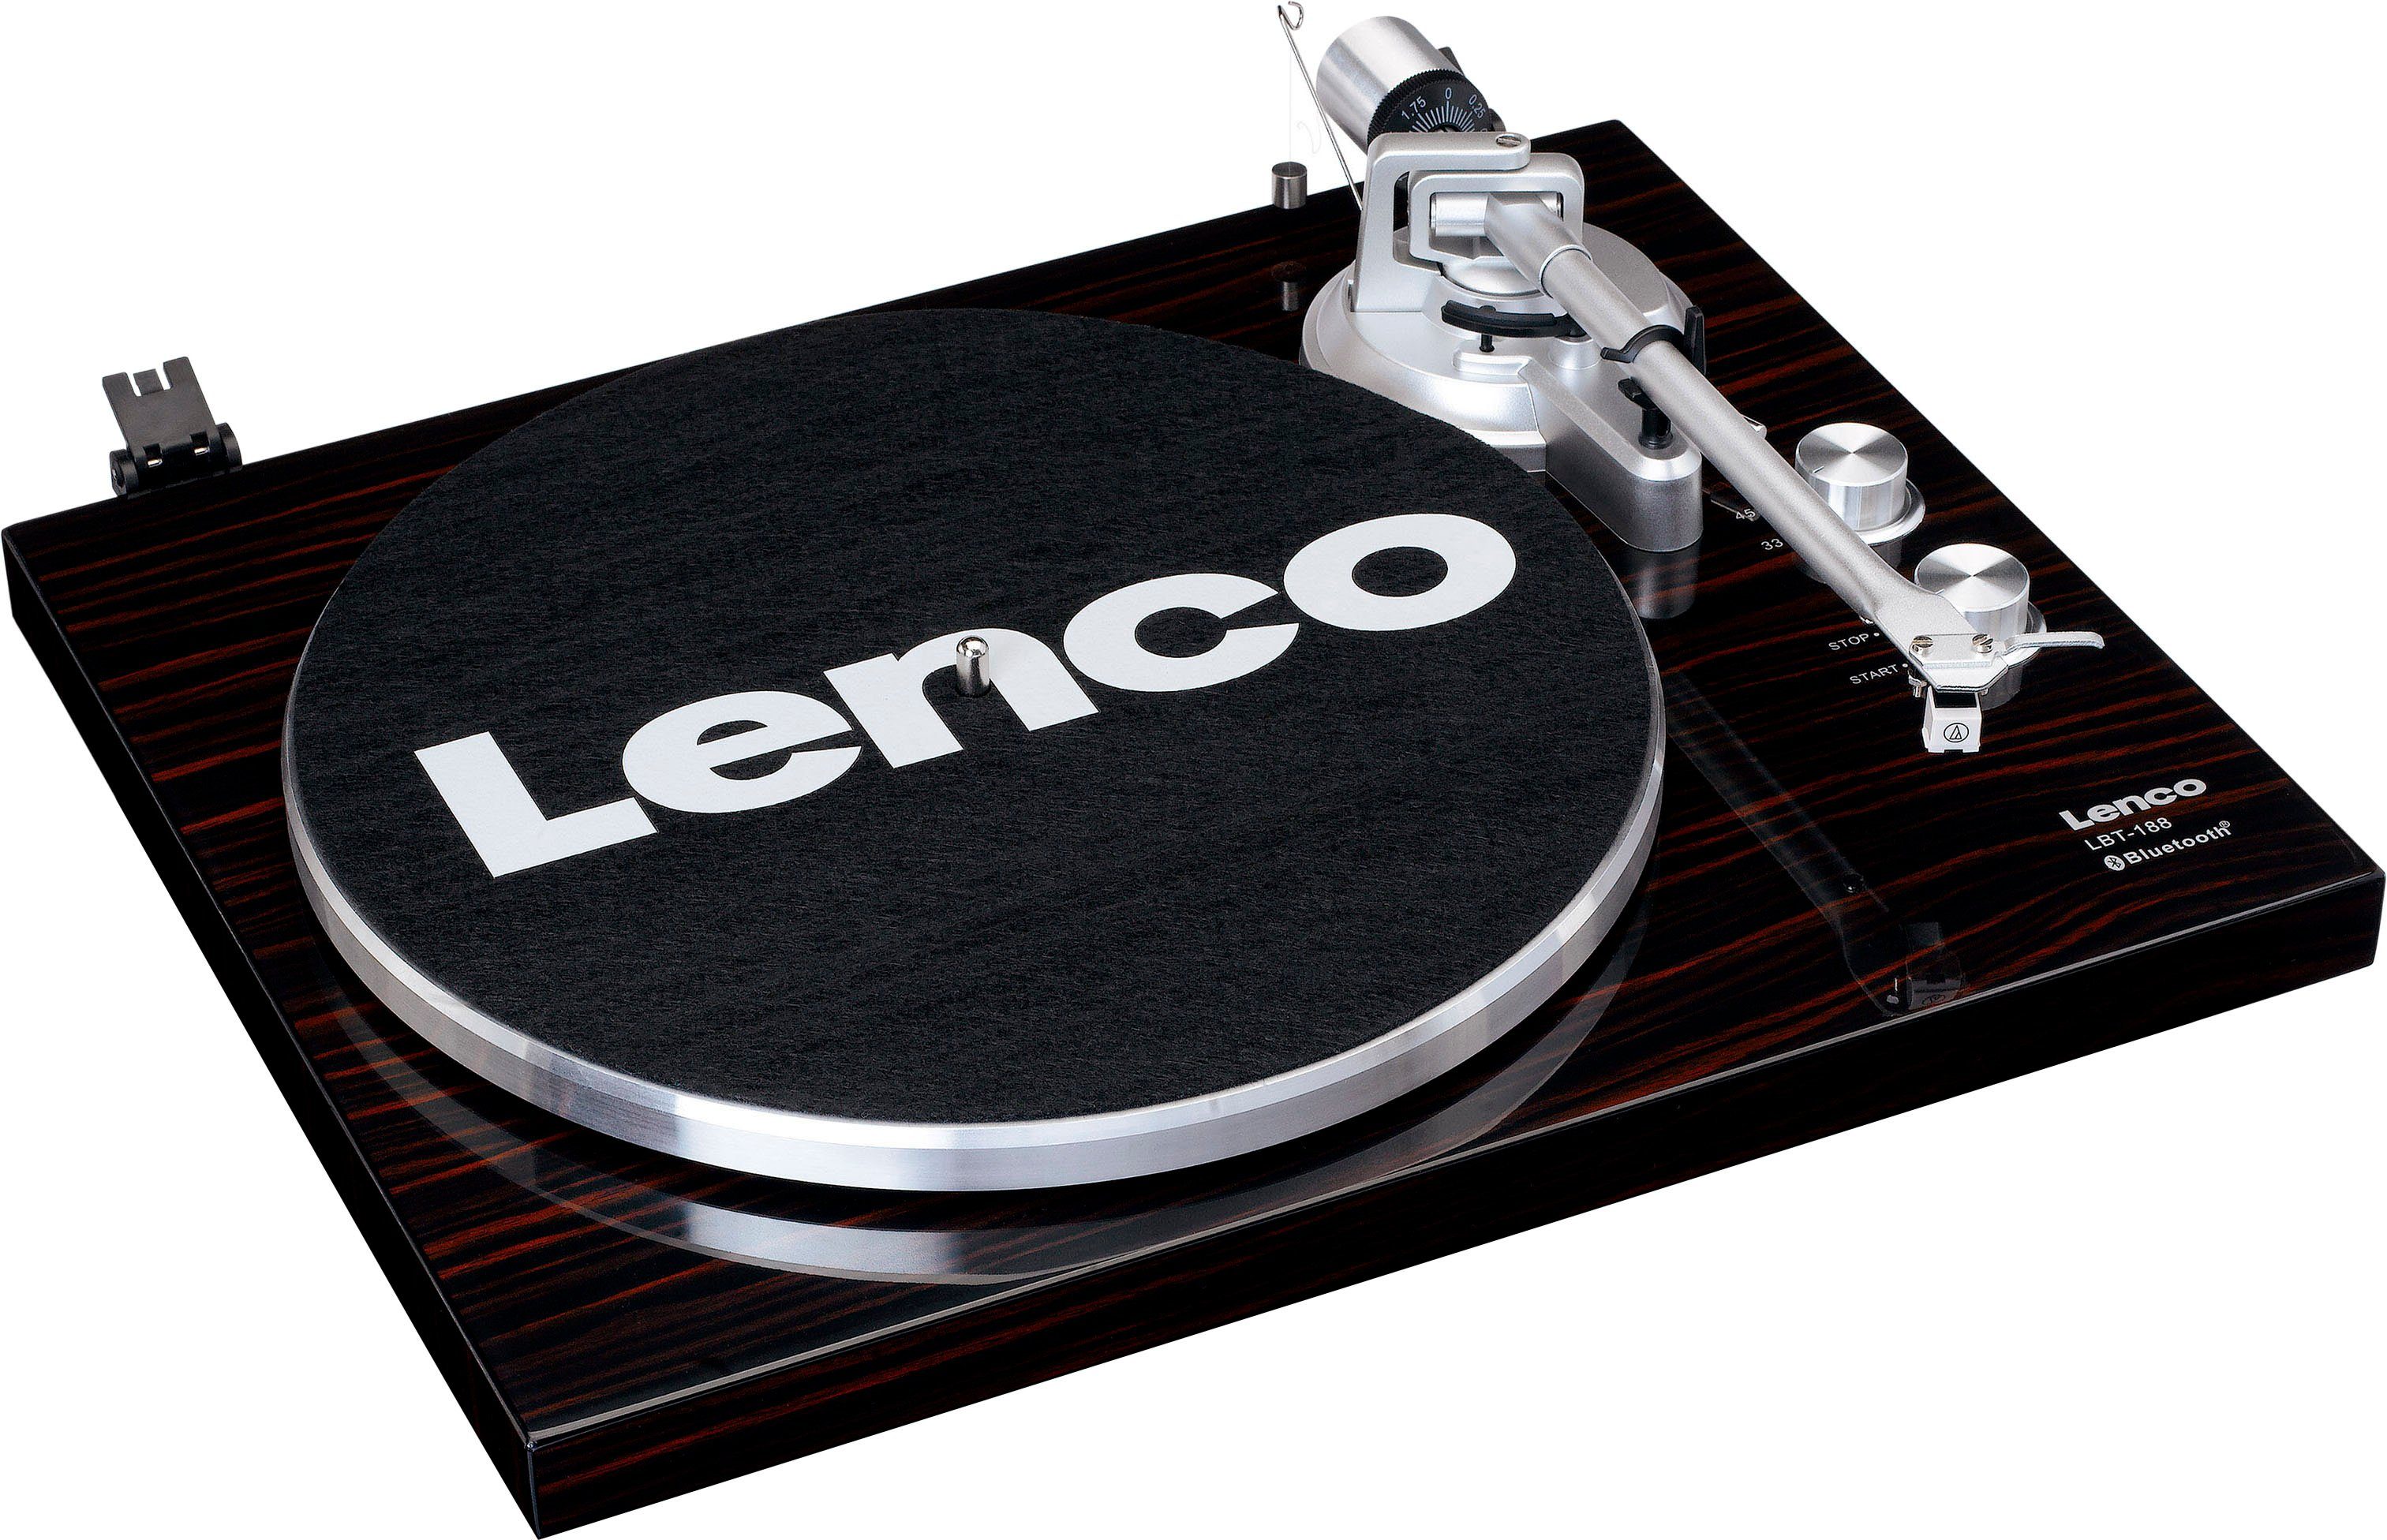 Lenco LBT-188 Plattenspieler walnuss (Bluetooth)